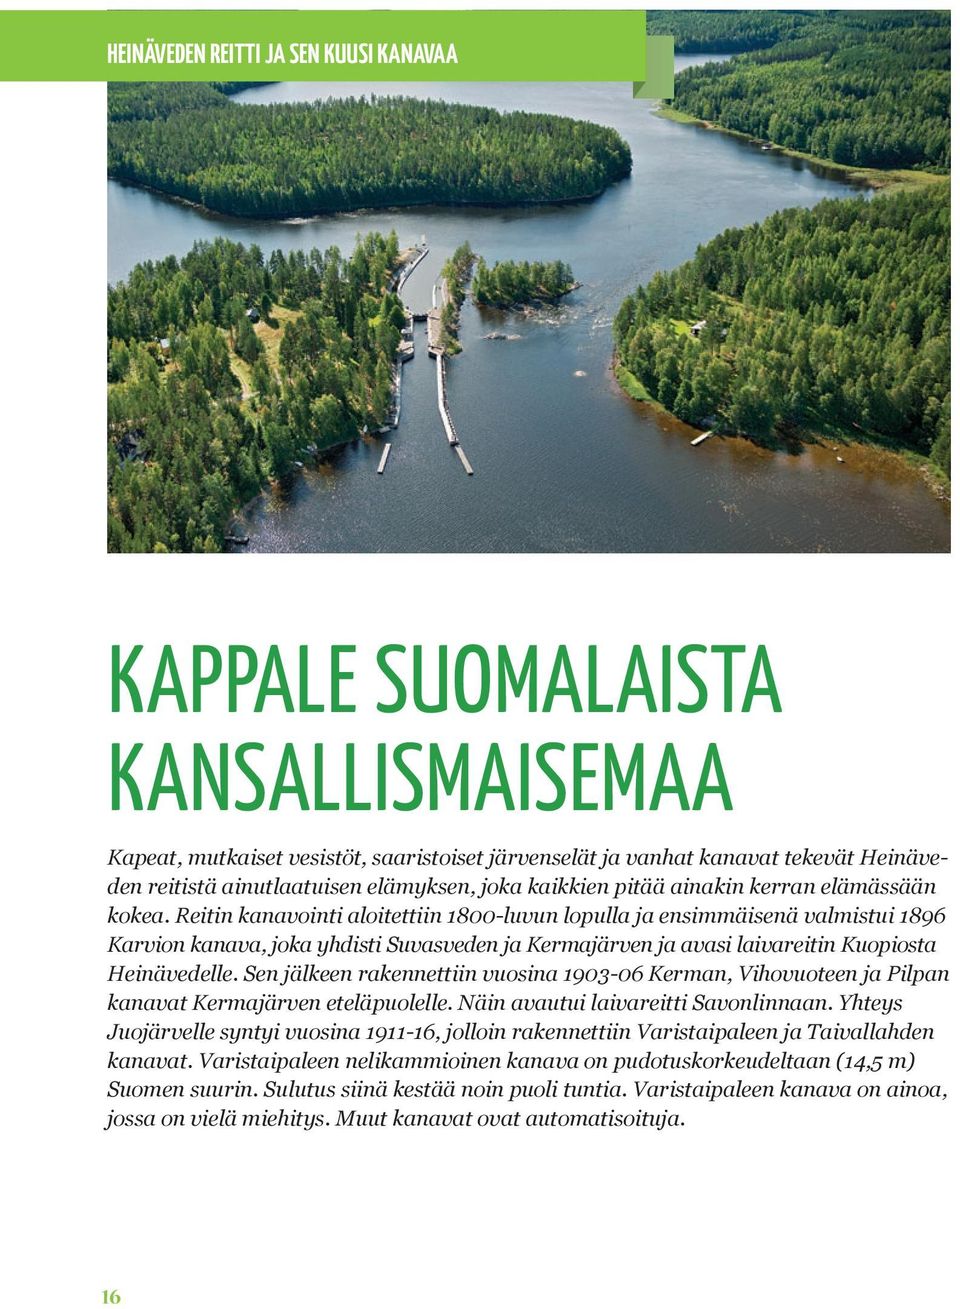 Reitin kanavointi aloitettiin 1800-luvun lopulla ja ensimmäisenä valmistui 1896 Karvion kanava, joka yhdisti Suvasveden ja Kermajärven ja avasi laivareitin Kuopiosta Heinävedelle.